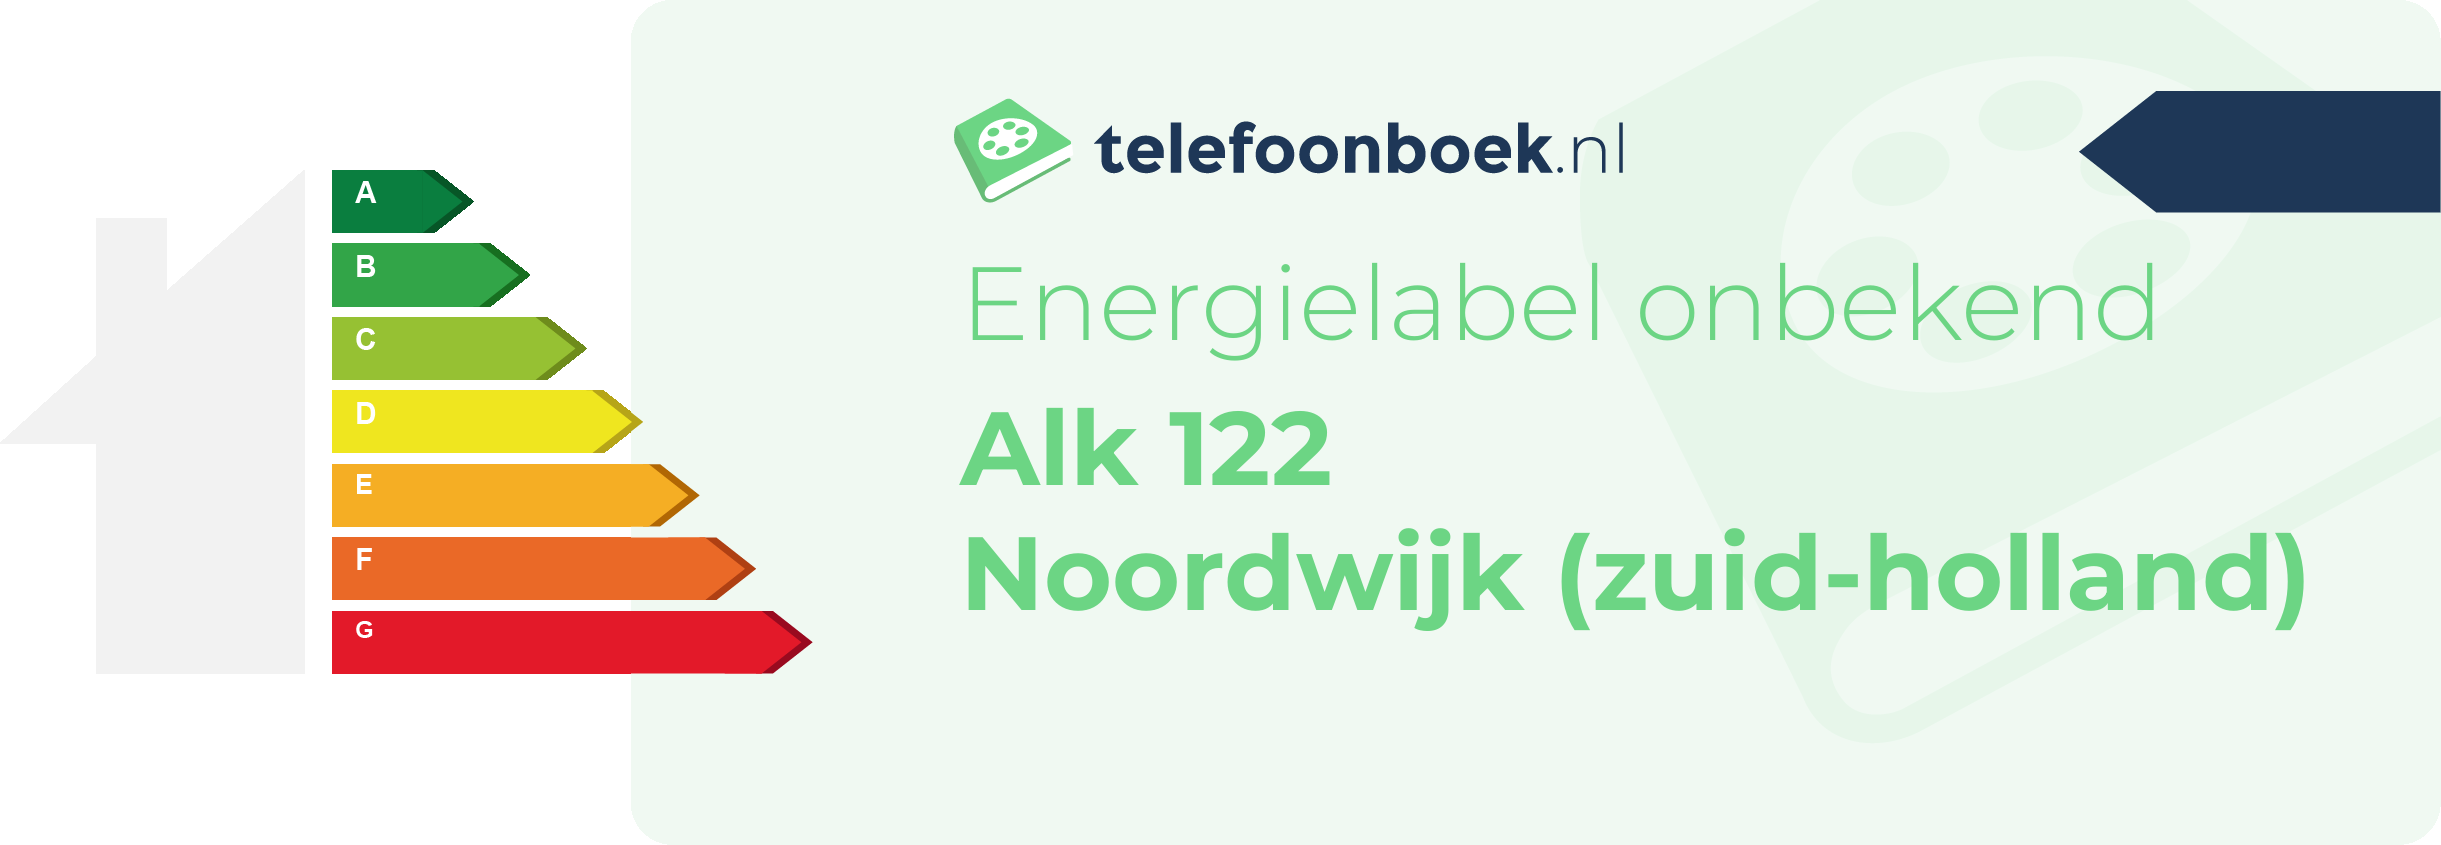 Energielabel Alk 122 Noordwijk (Zuid-Holland)